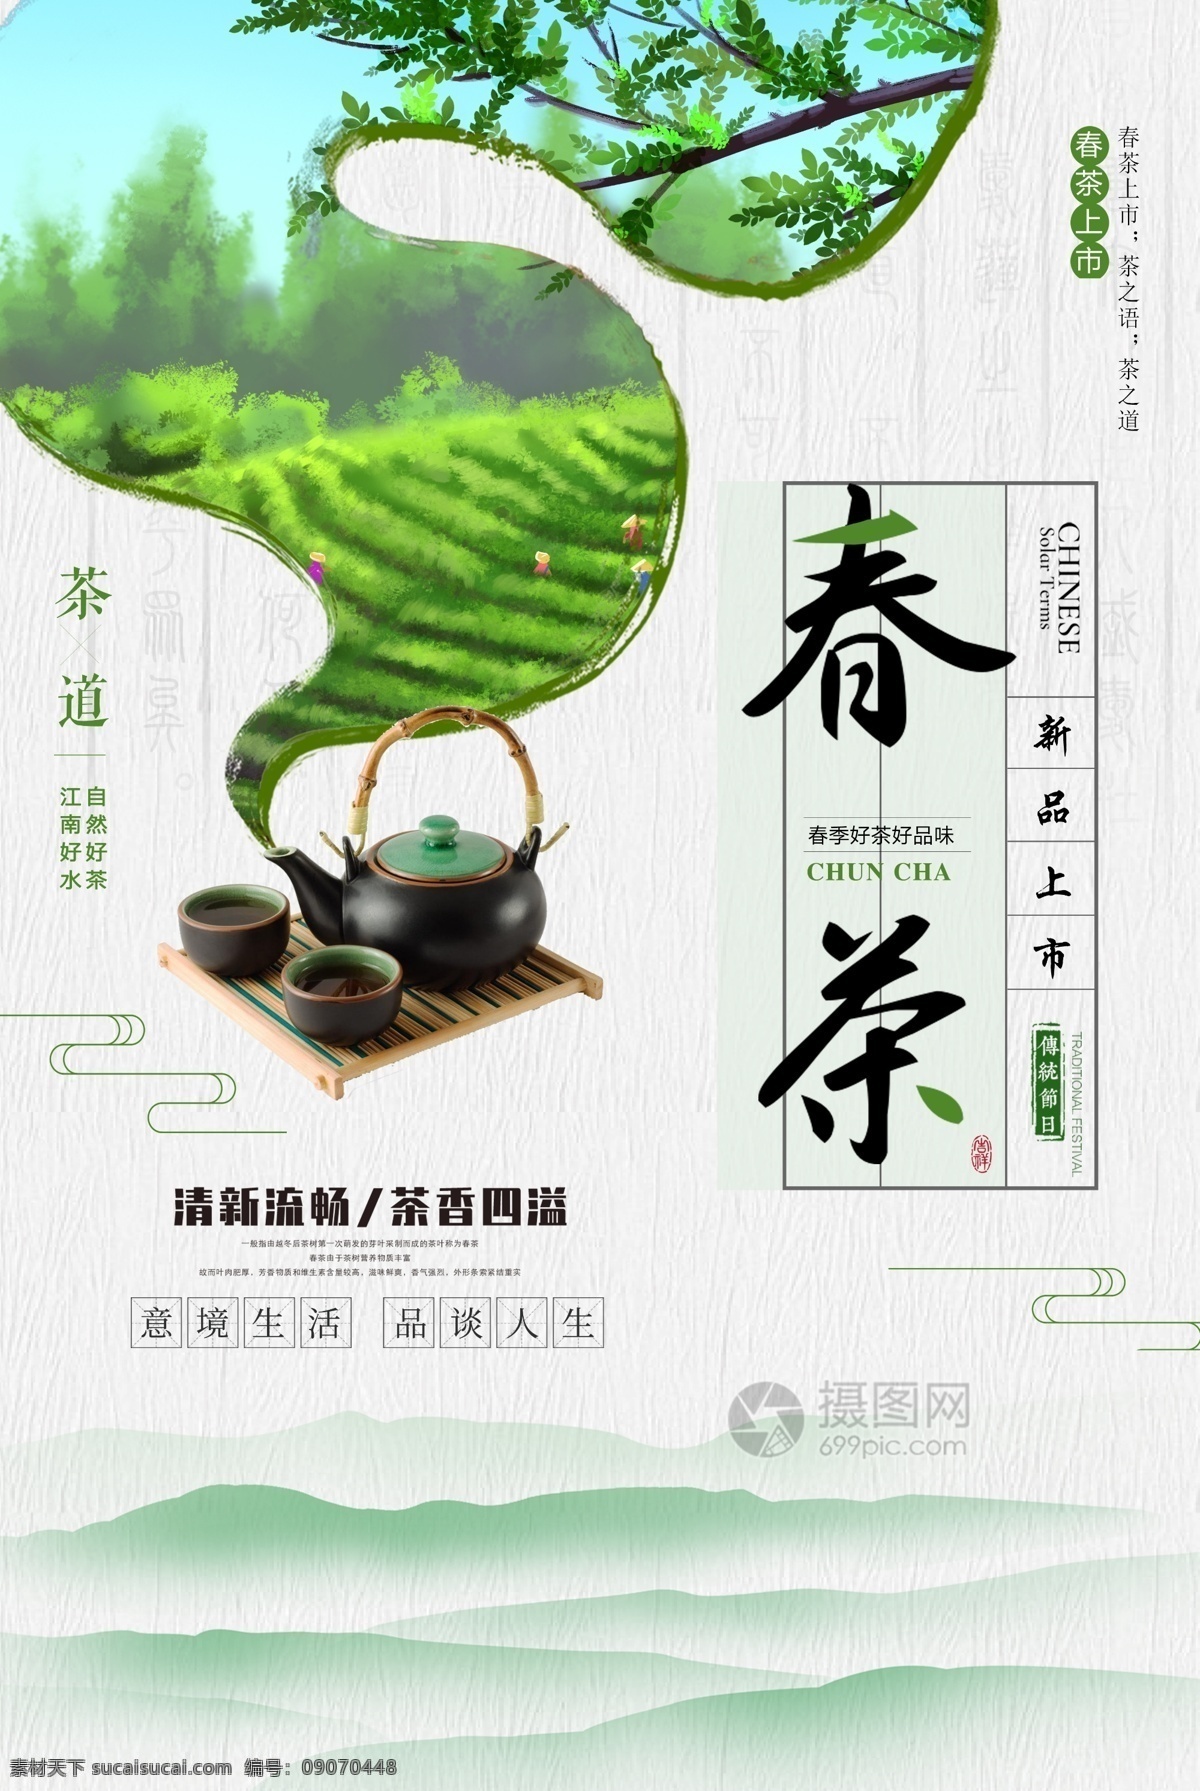 简约 意境 春茶 海报 清新 促销 绿色 古风 字体设计 版式设计 春天的茶 春茶意境 茶韵 茶香 茶 茶叶 新茶 品茗 茶文化 采茶